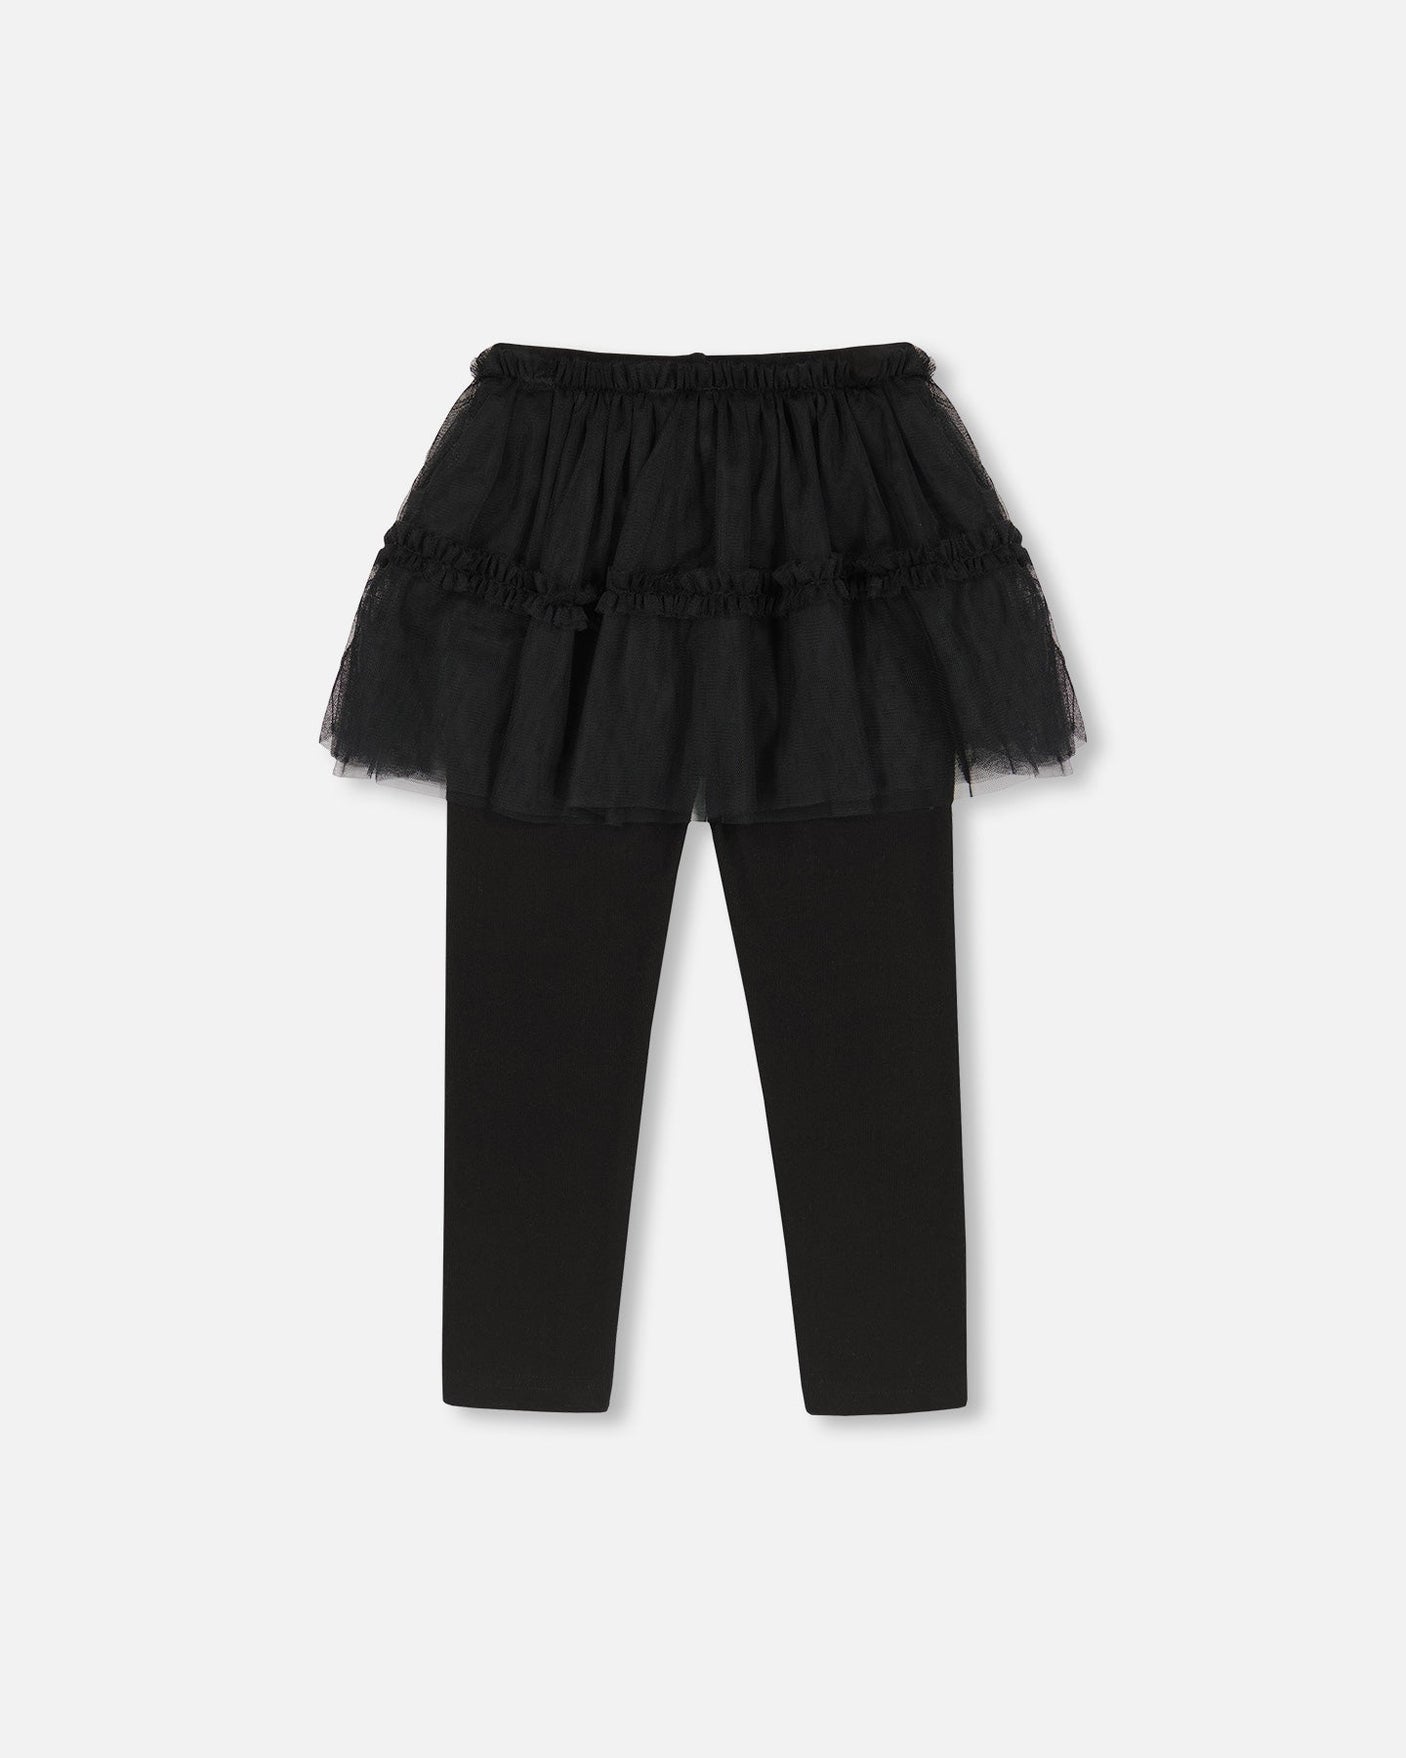 Super Soft Leggings With Tulle Skirt Black-2